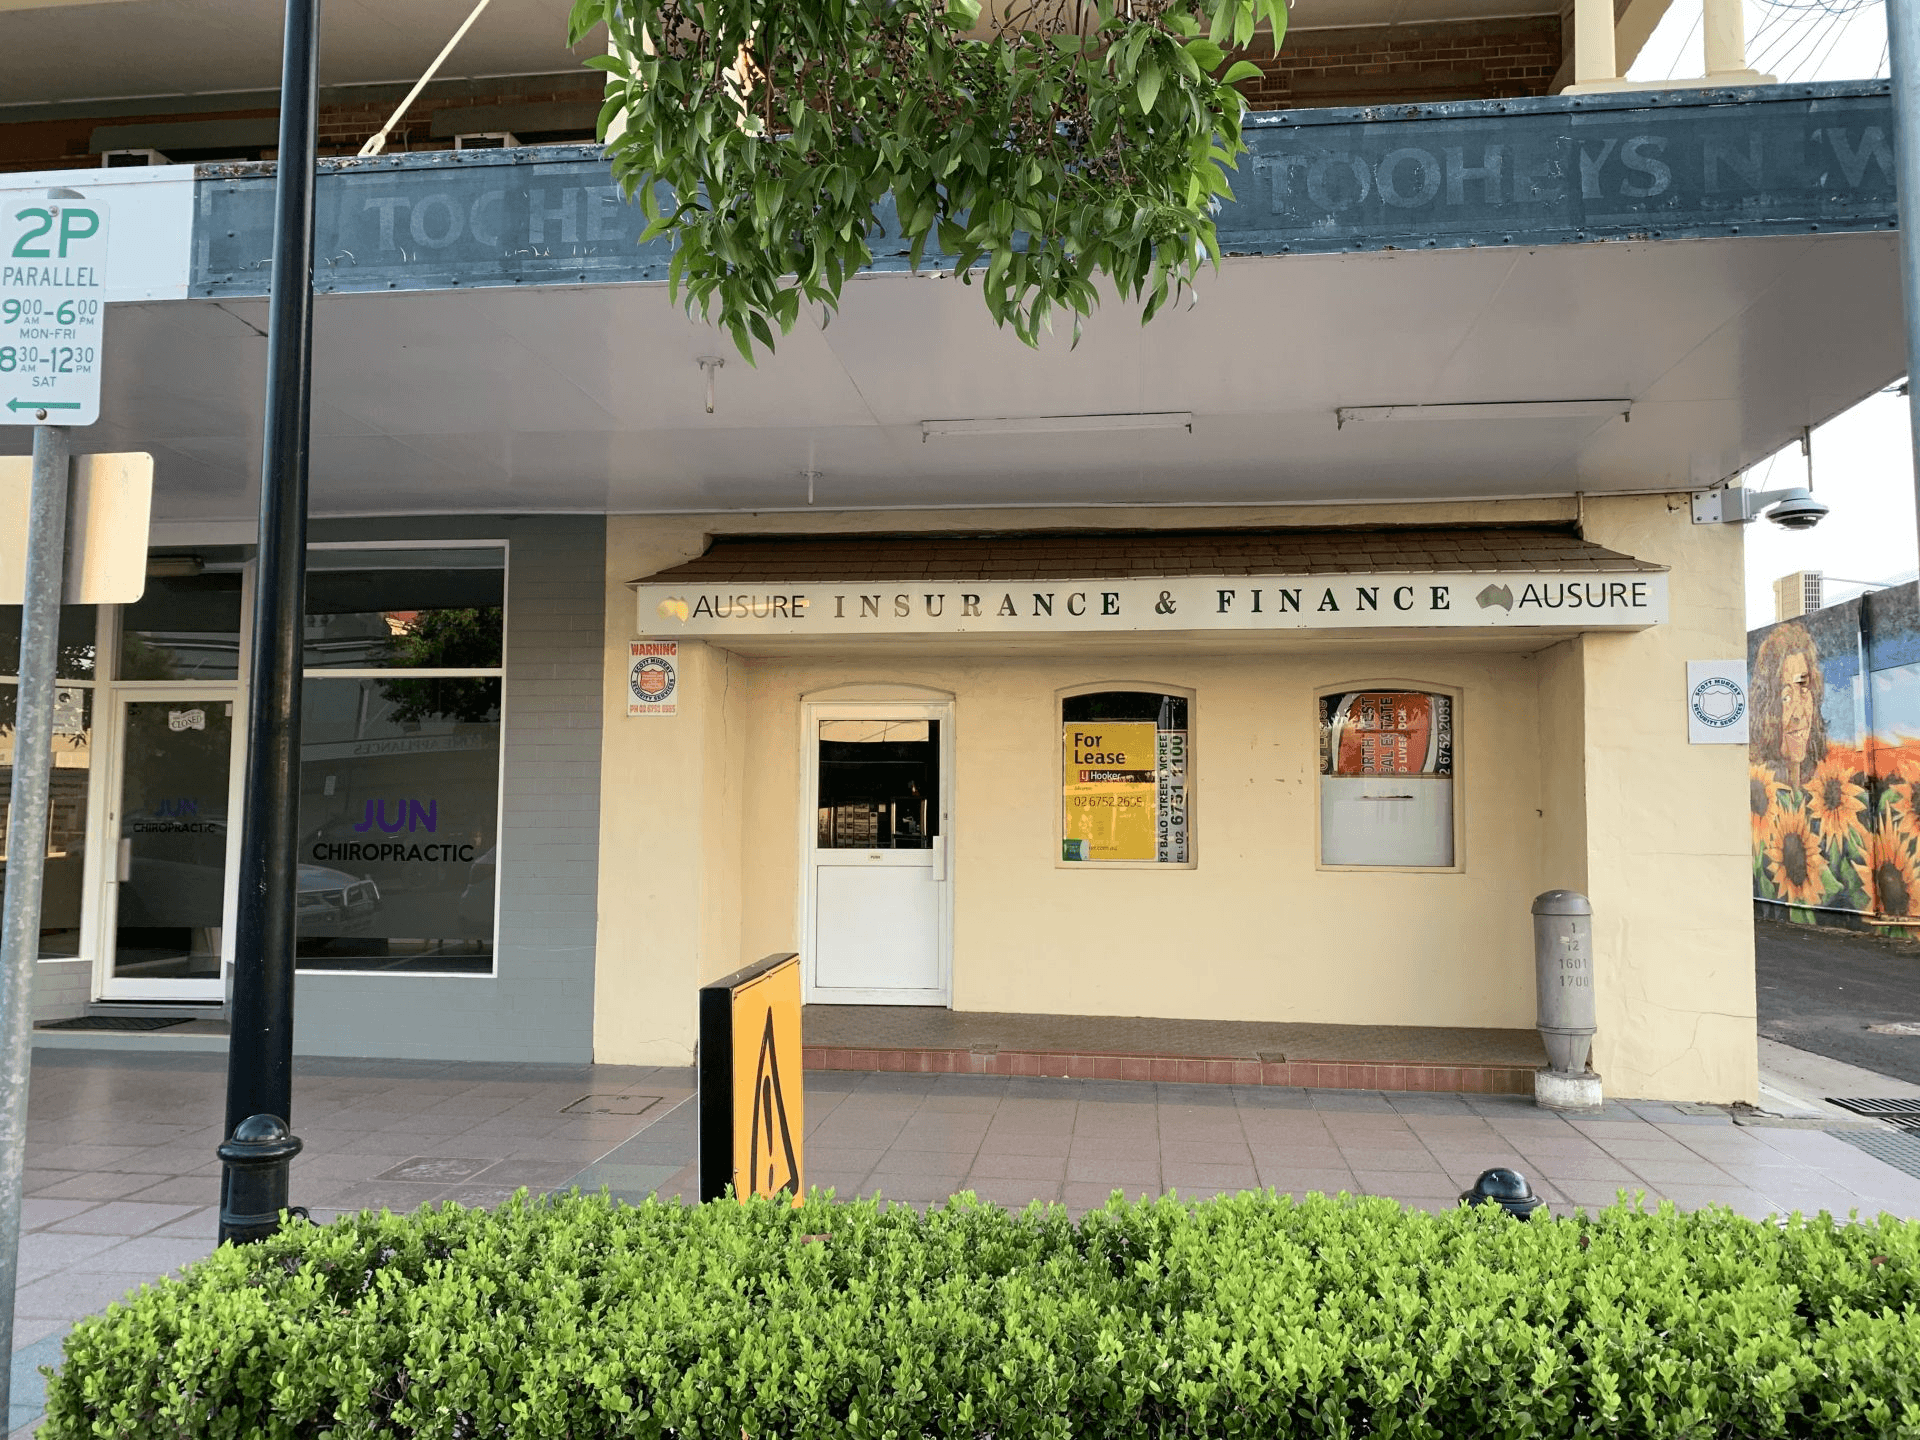 44 Heber Street, Moree, NSW 2400